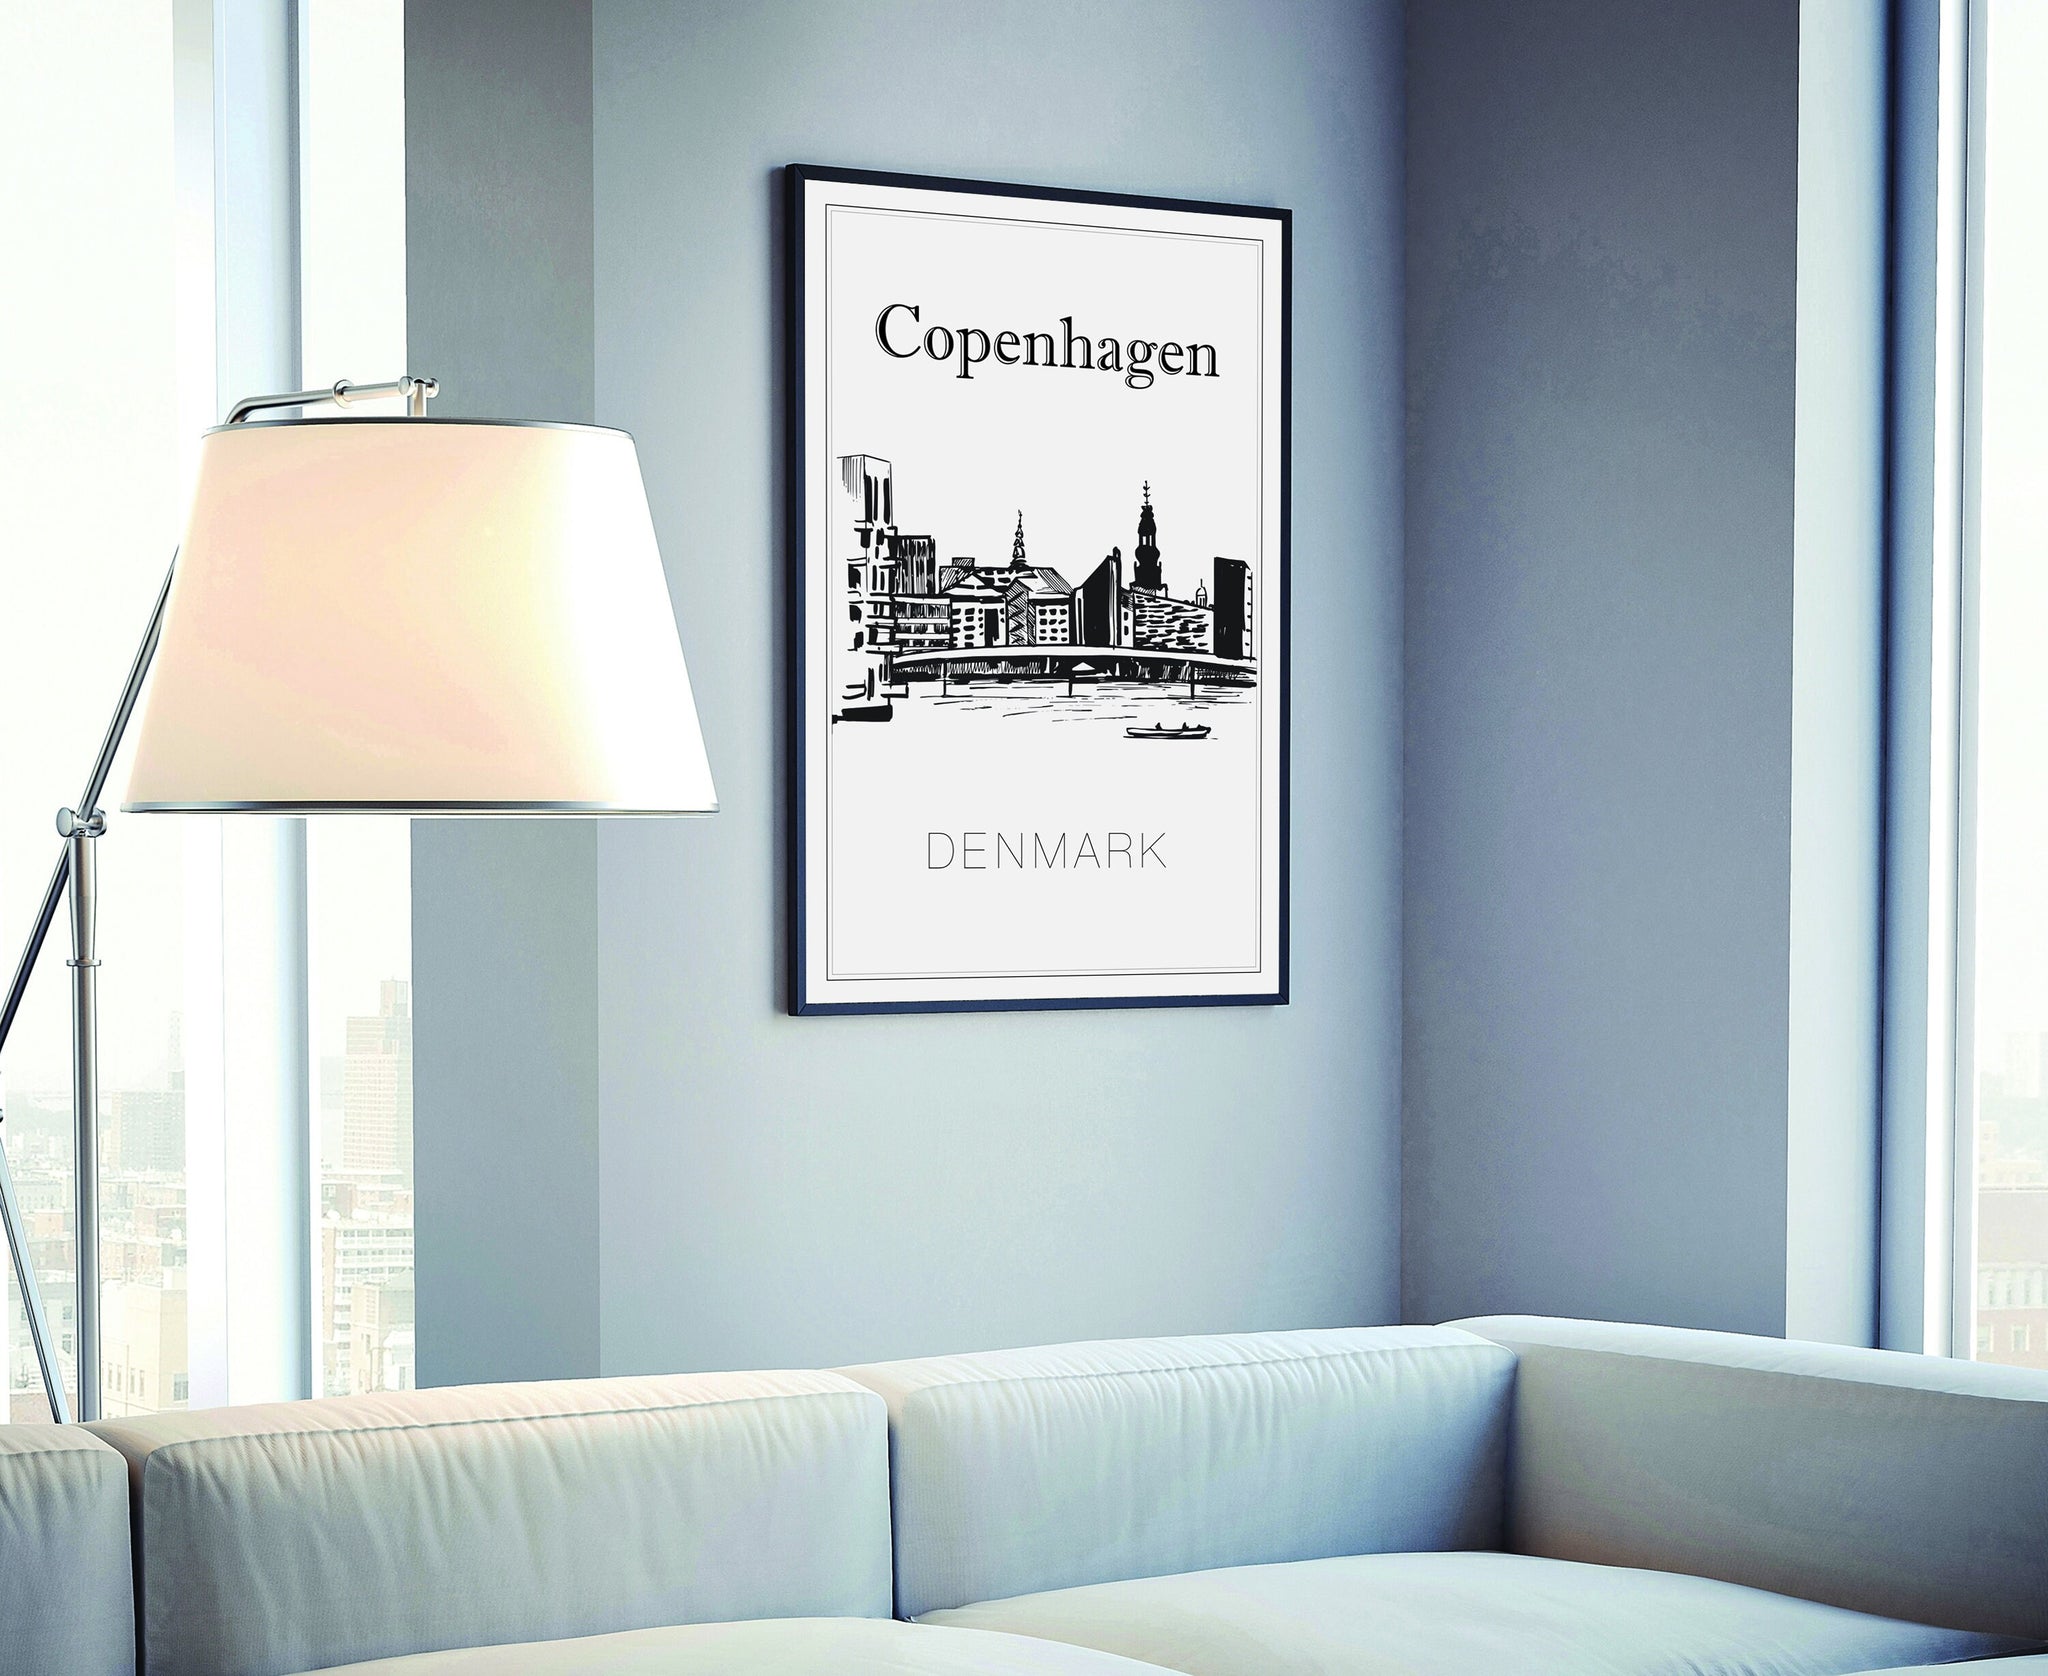 Hand Drawn Poster, Copenhagen Travel Poster, Denmark Poster Wall Art, Copenhagen Cityscape and Landmark Map, City Map Poster For Home